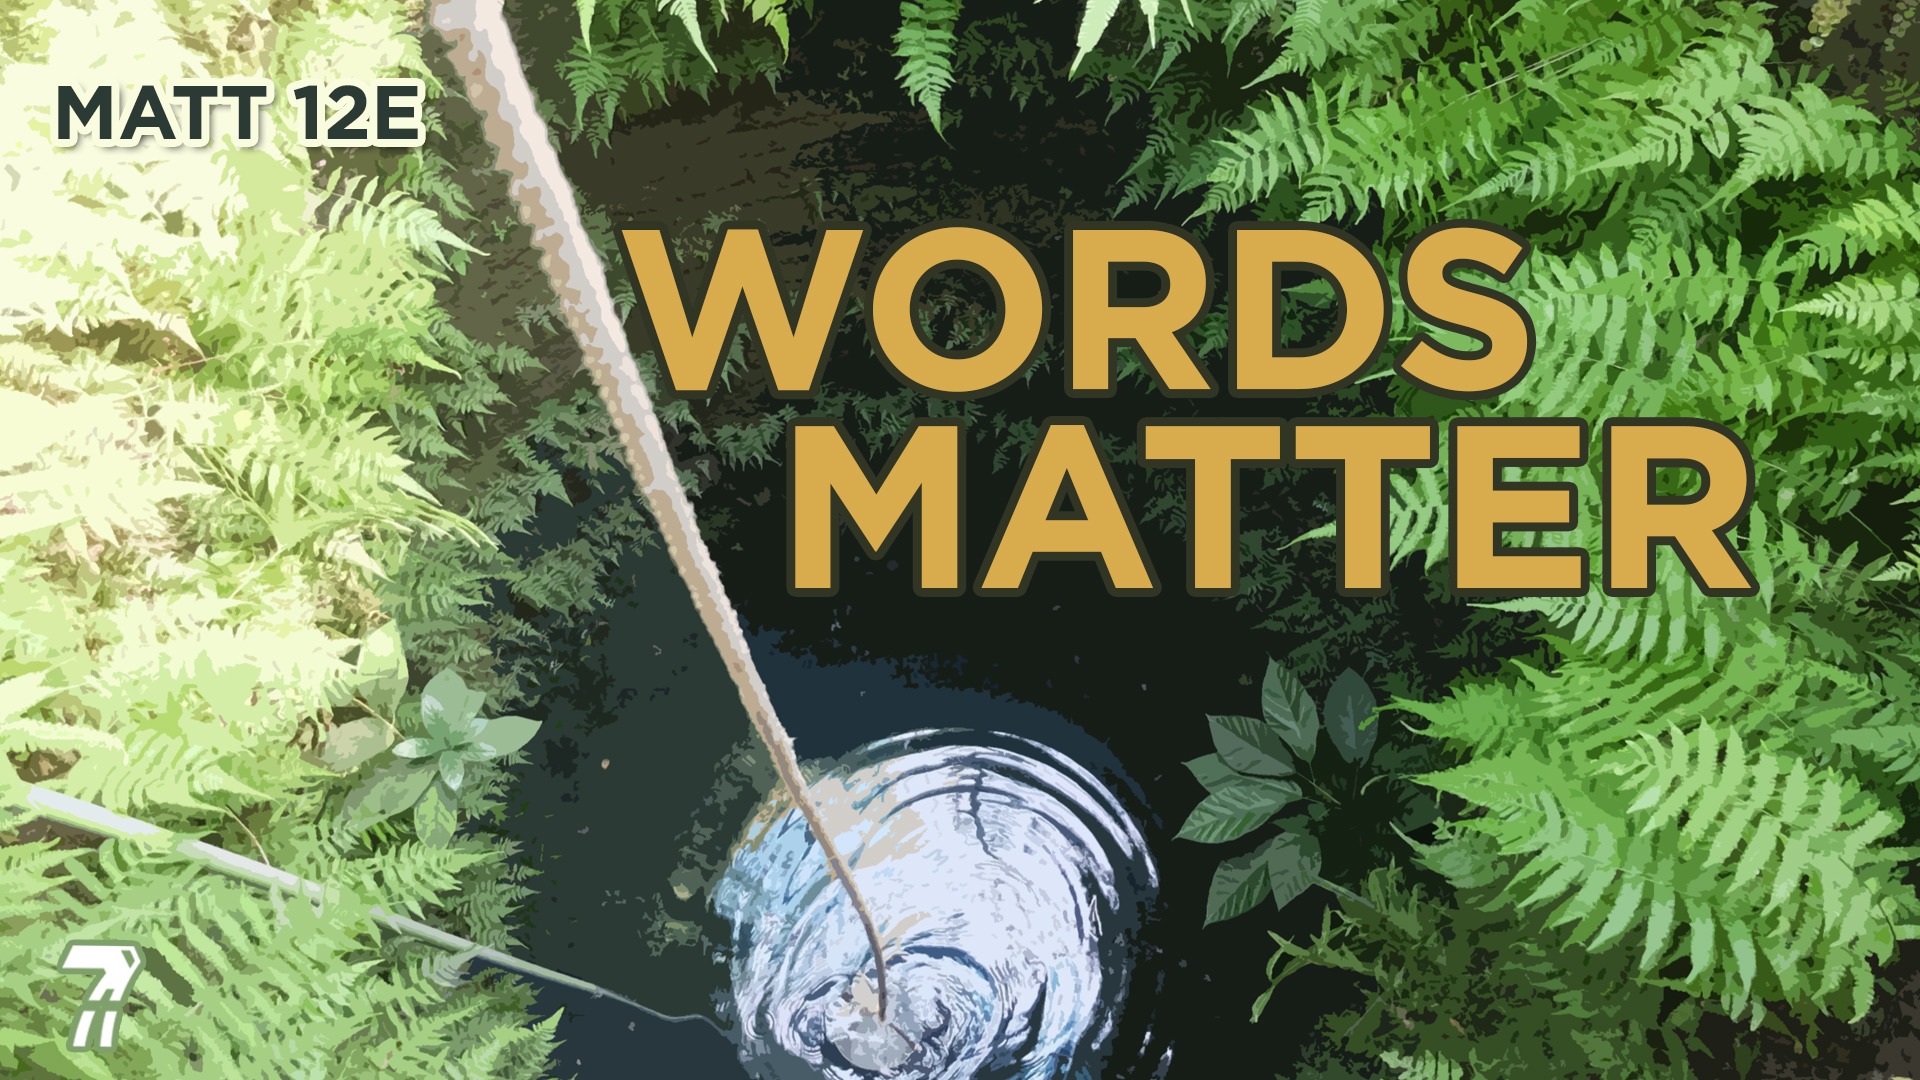 Matthew 12e – Words Matter